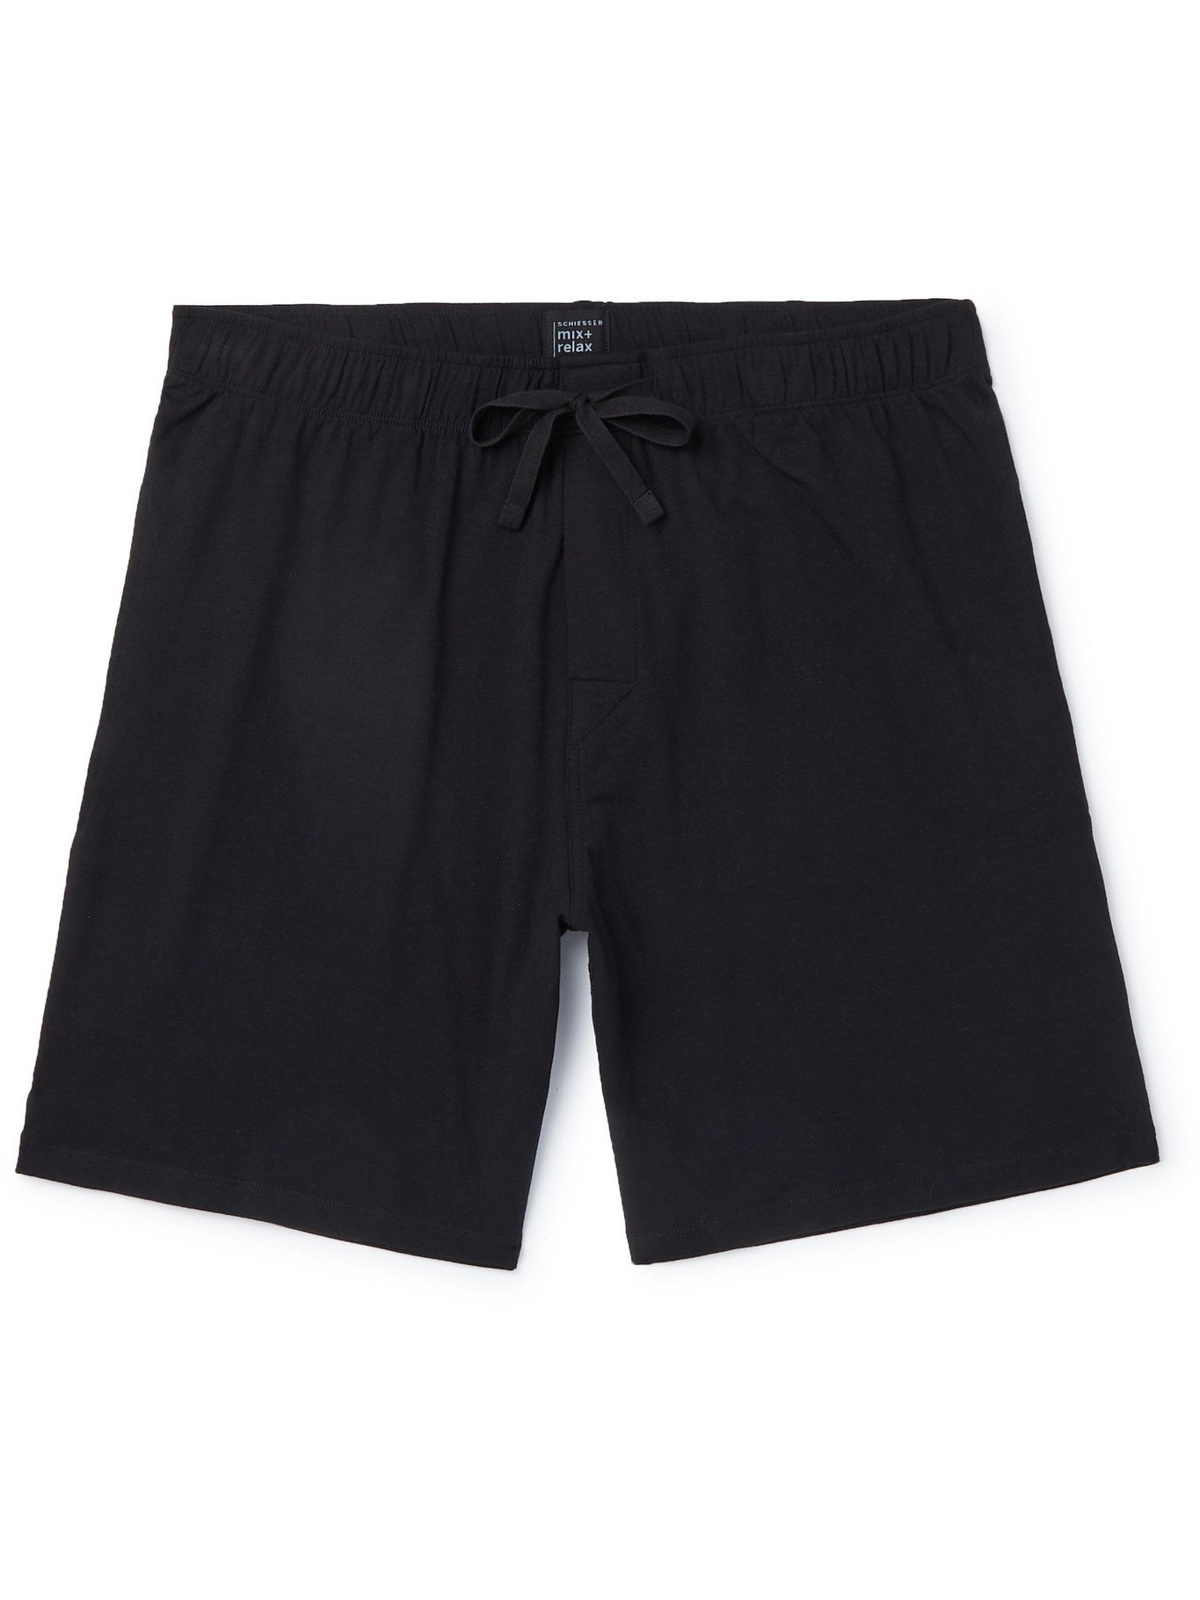 SCHIESSER - Cotton-Jersey Pyjama - M - Schiesser Black Shorts